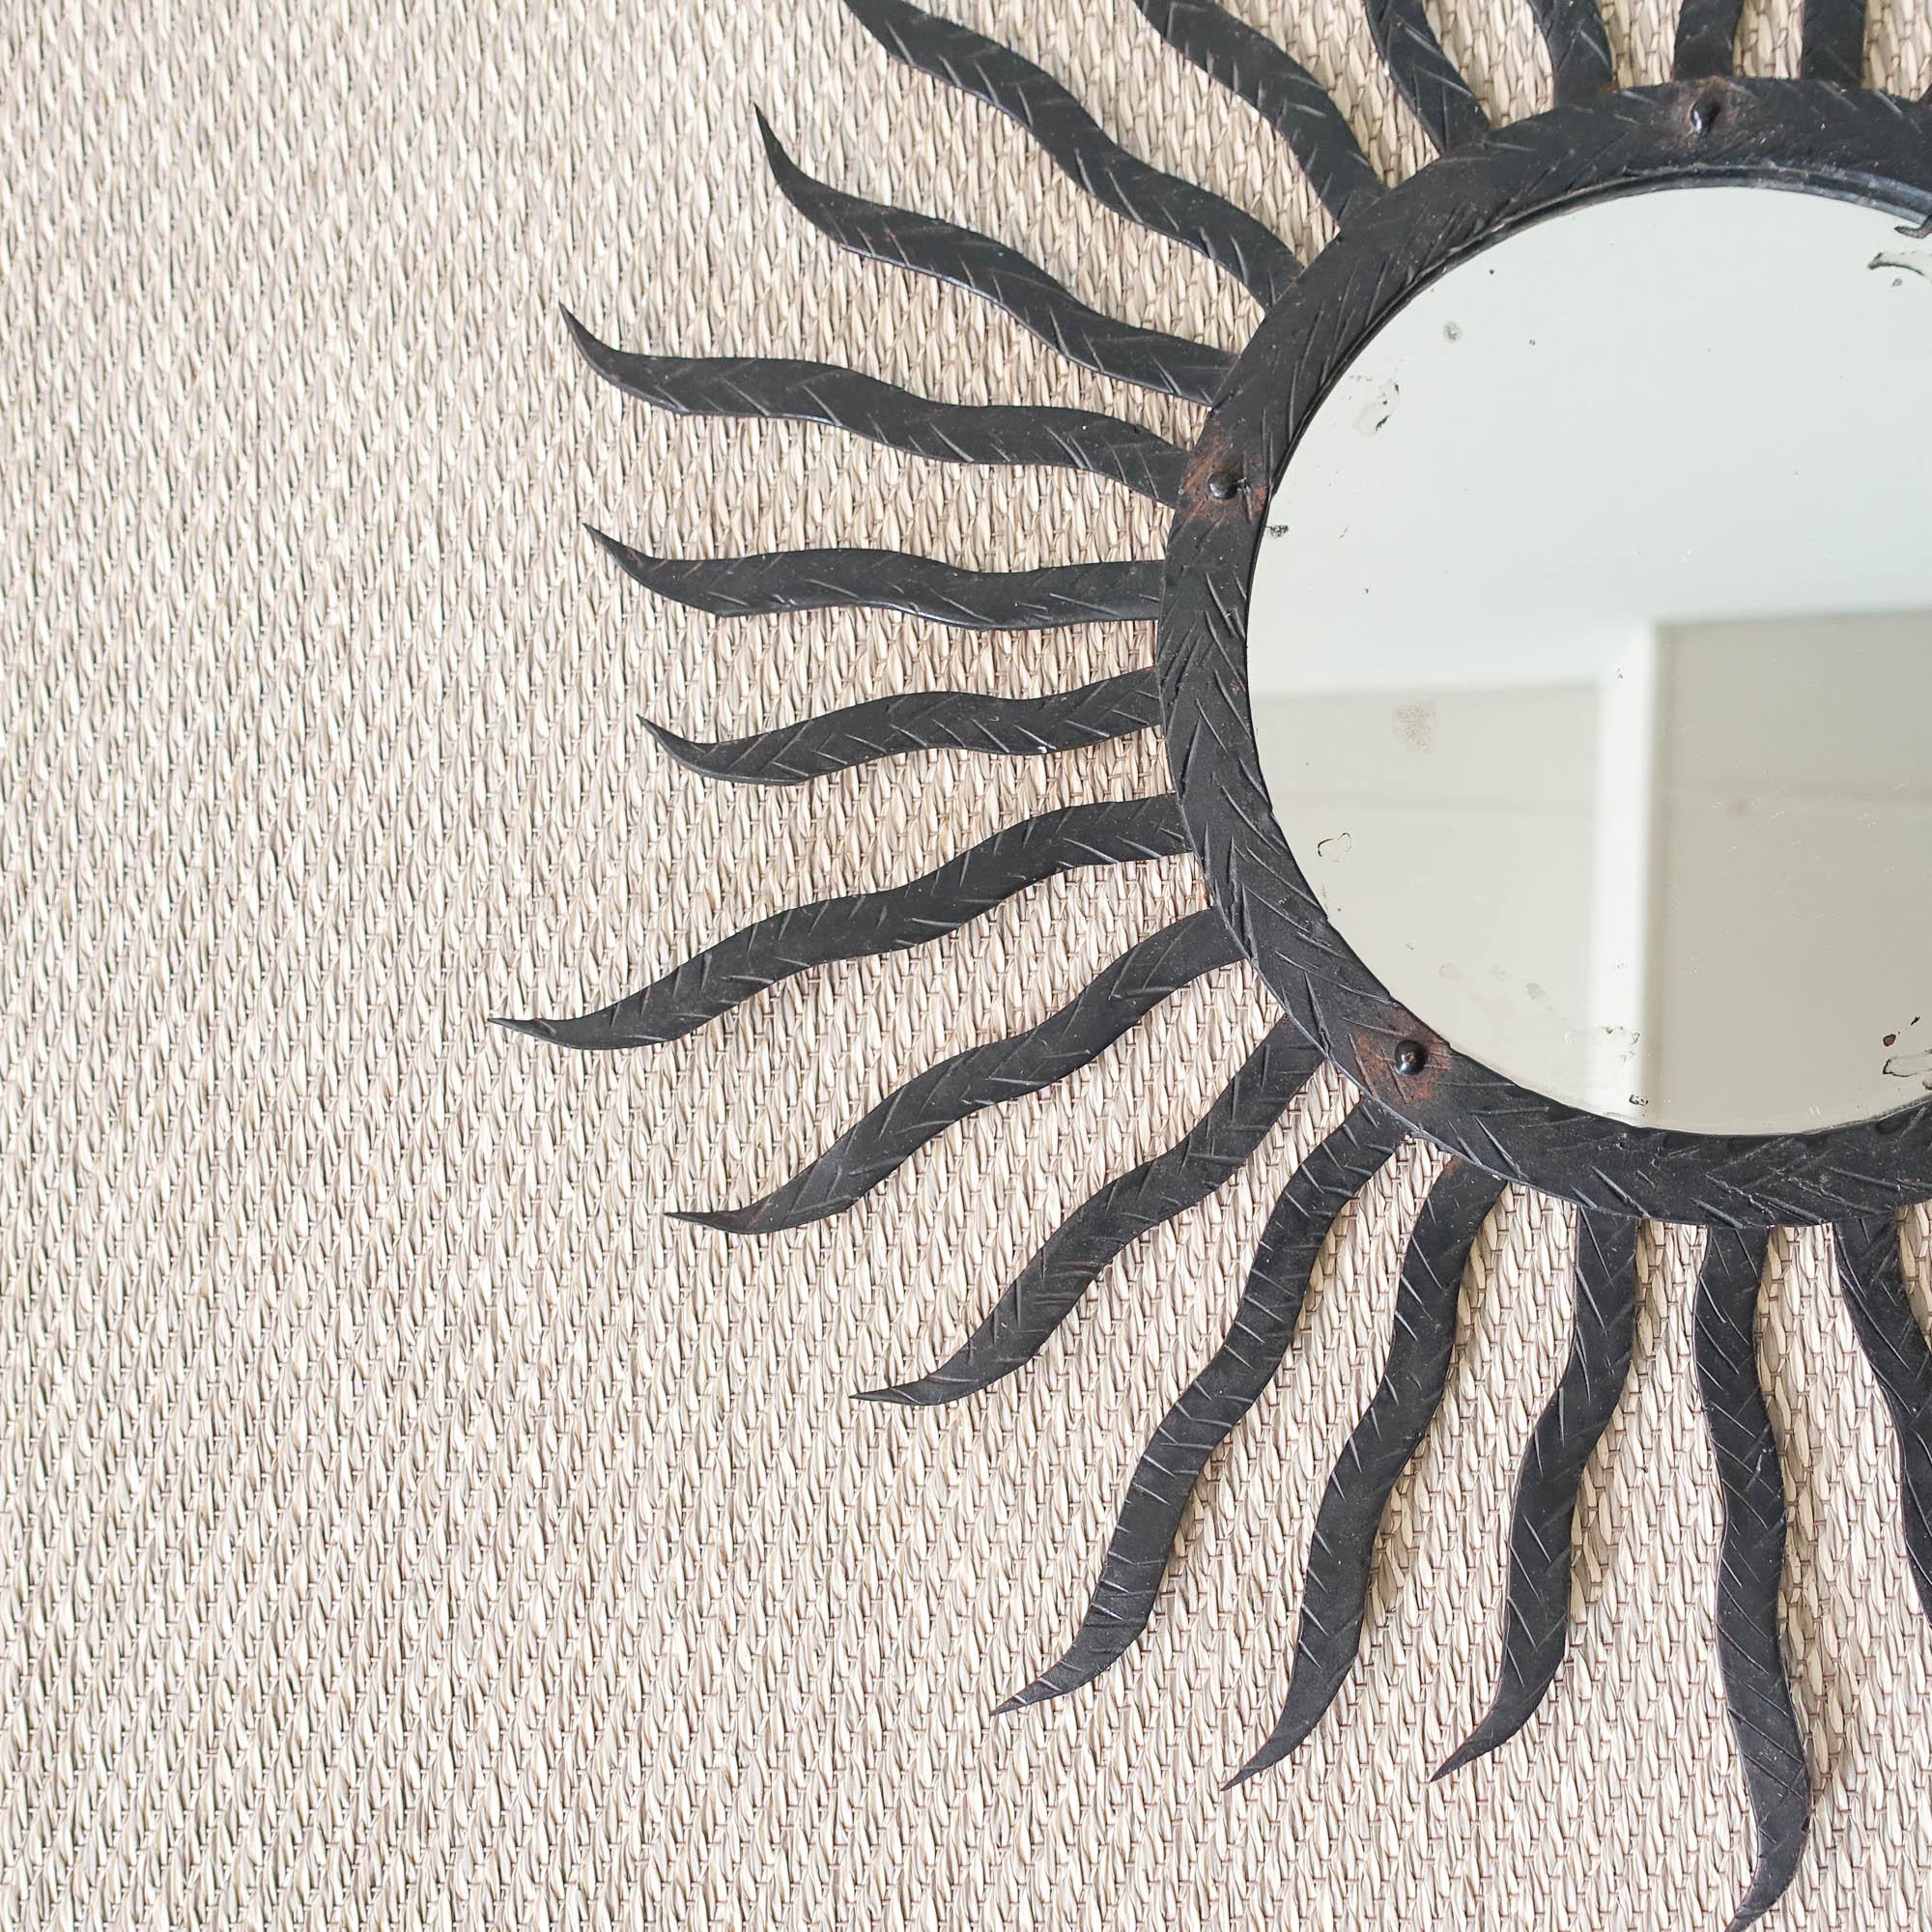 Ce miroir ensoleillé a été conçu et produit en Italie, dans les années 1950.
Il présente un cadre en métal noir sculpté composé de longs et de courts. L'anneau entourant le miroir central présente également un motif décoratif aléatoire sculpté.